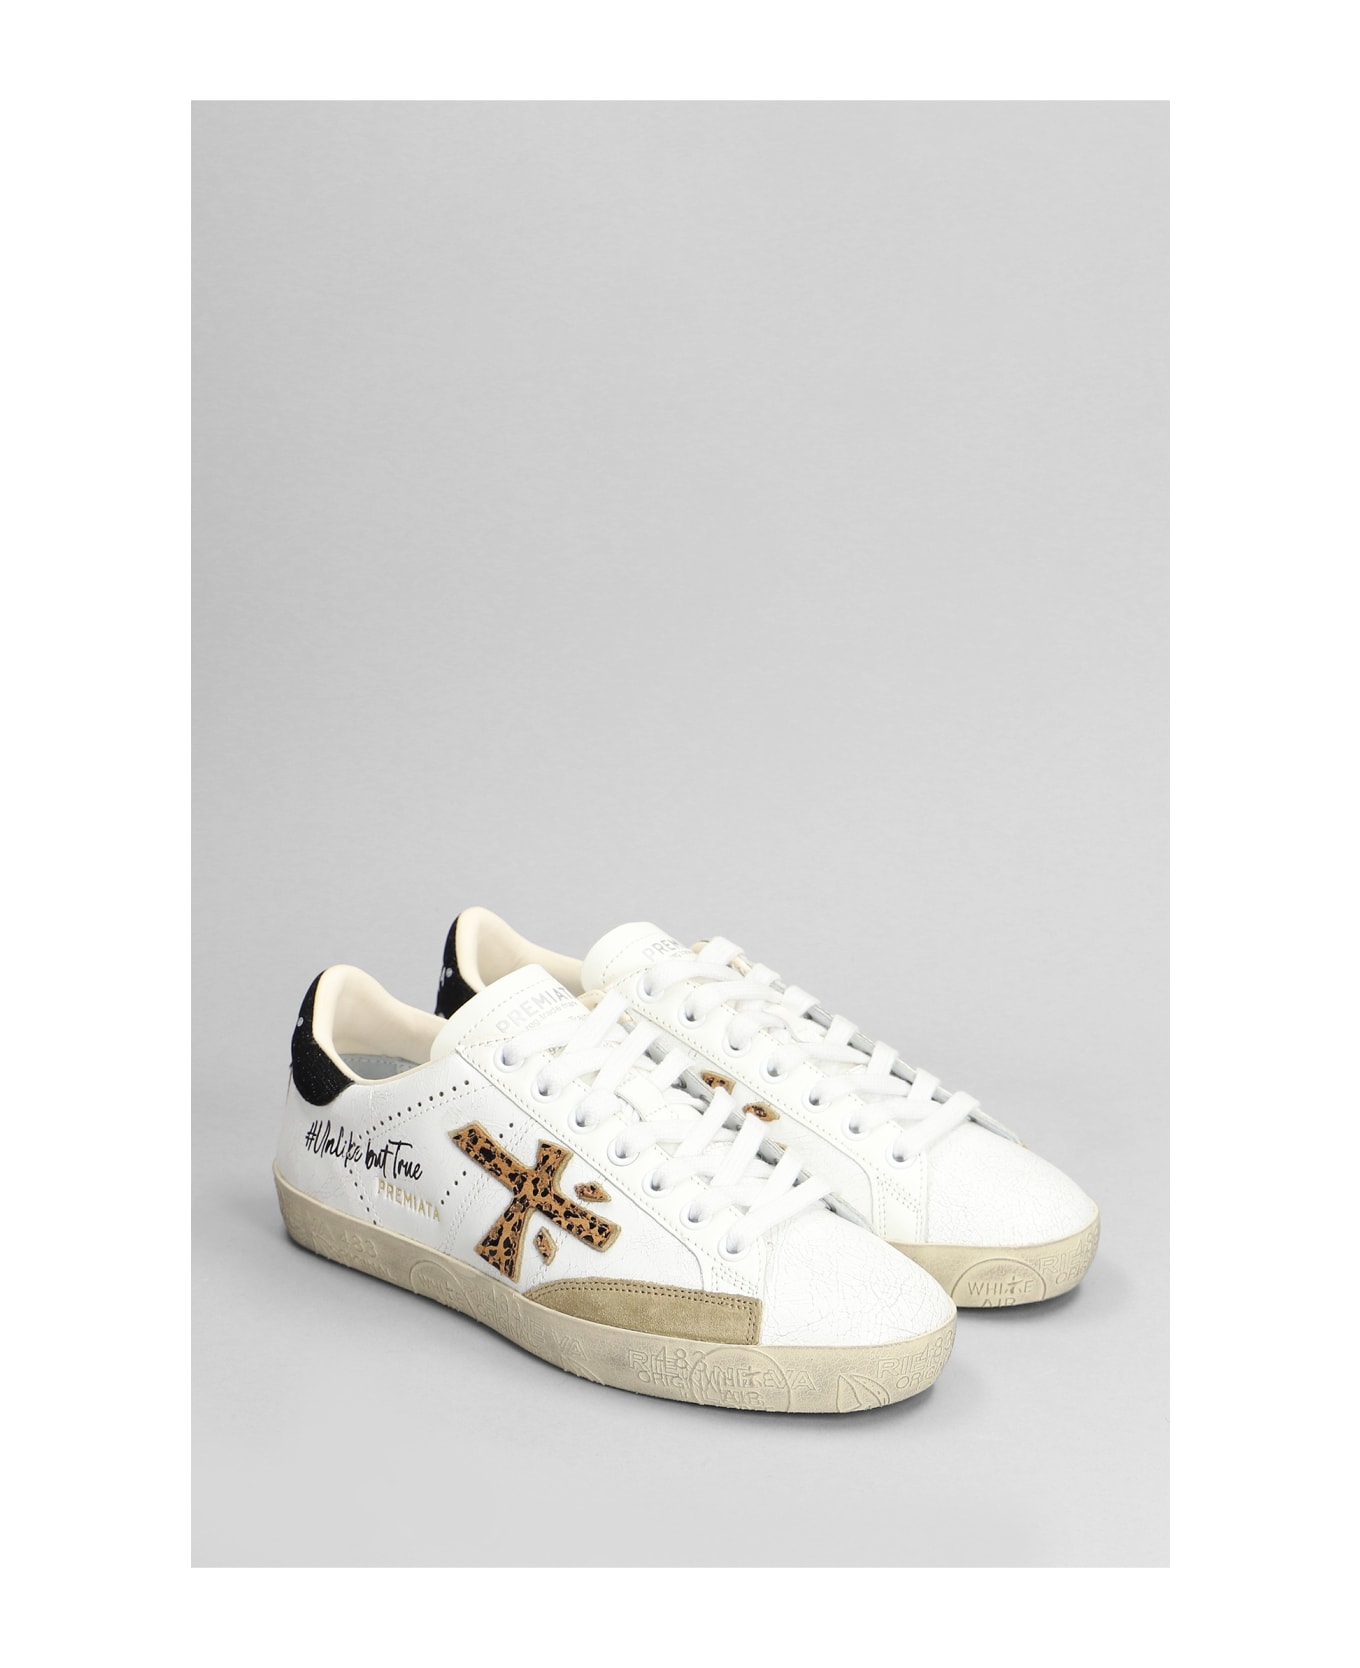 Premiata Steven Sneakers In White Leather - MULTICOLOUR スニーカー